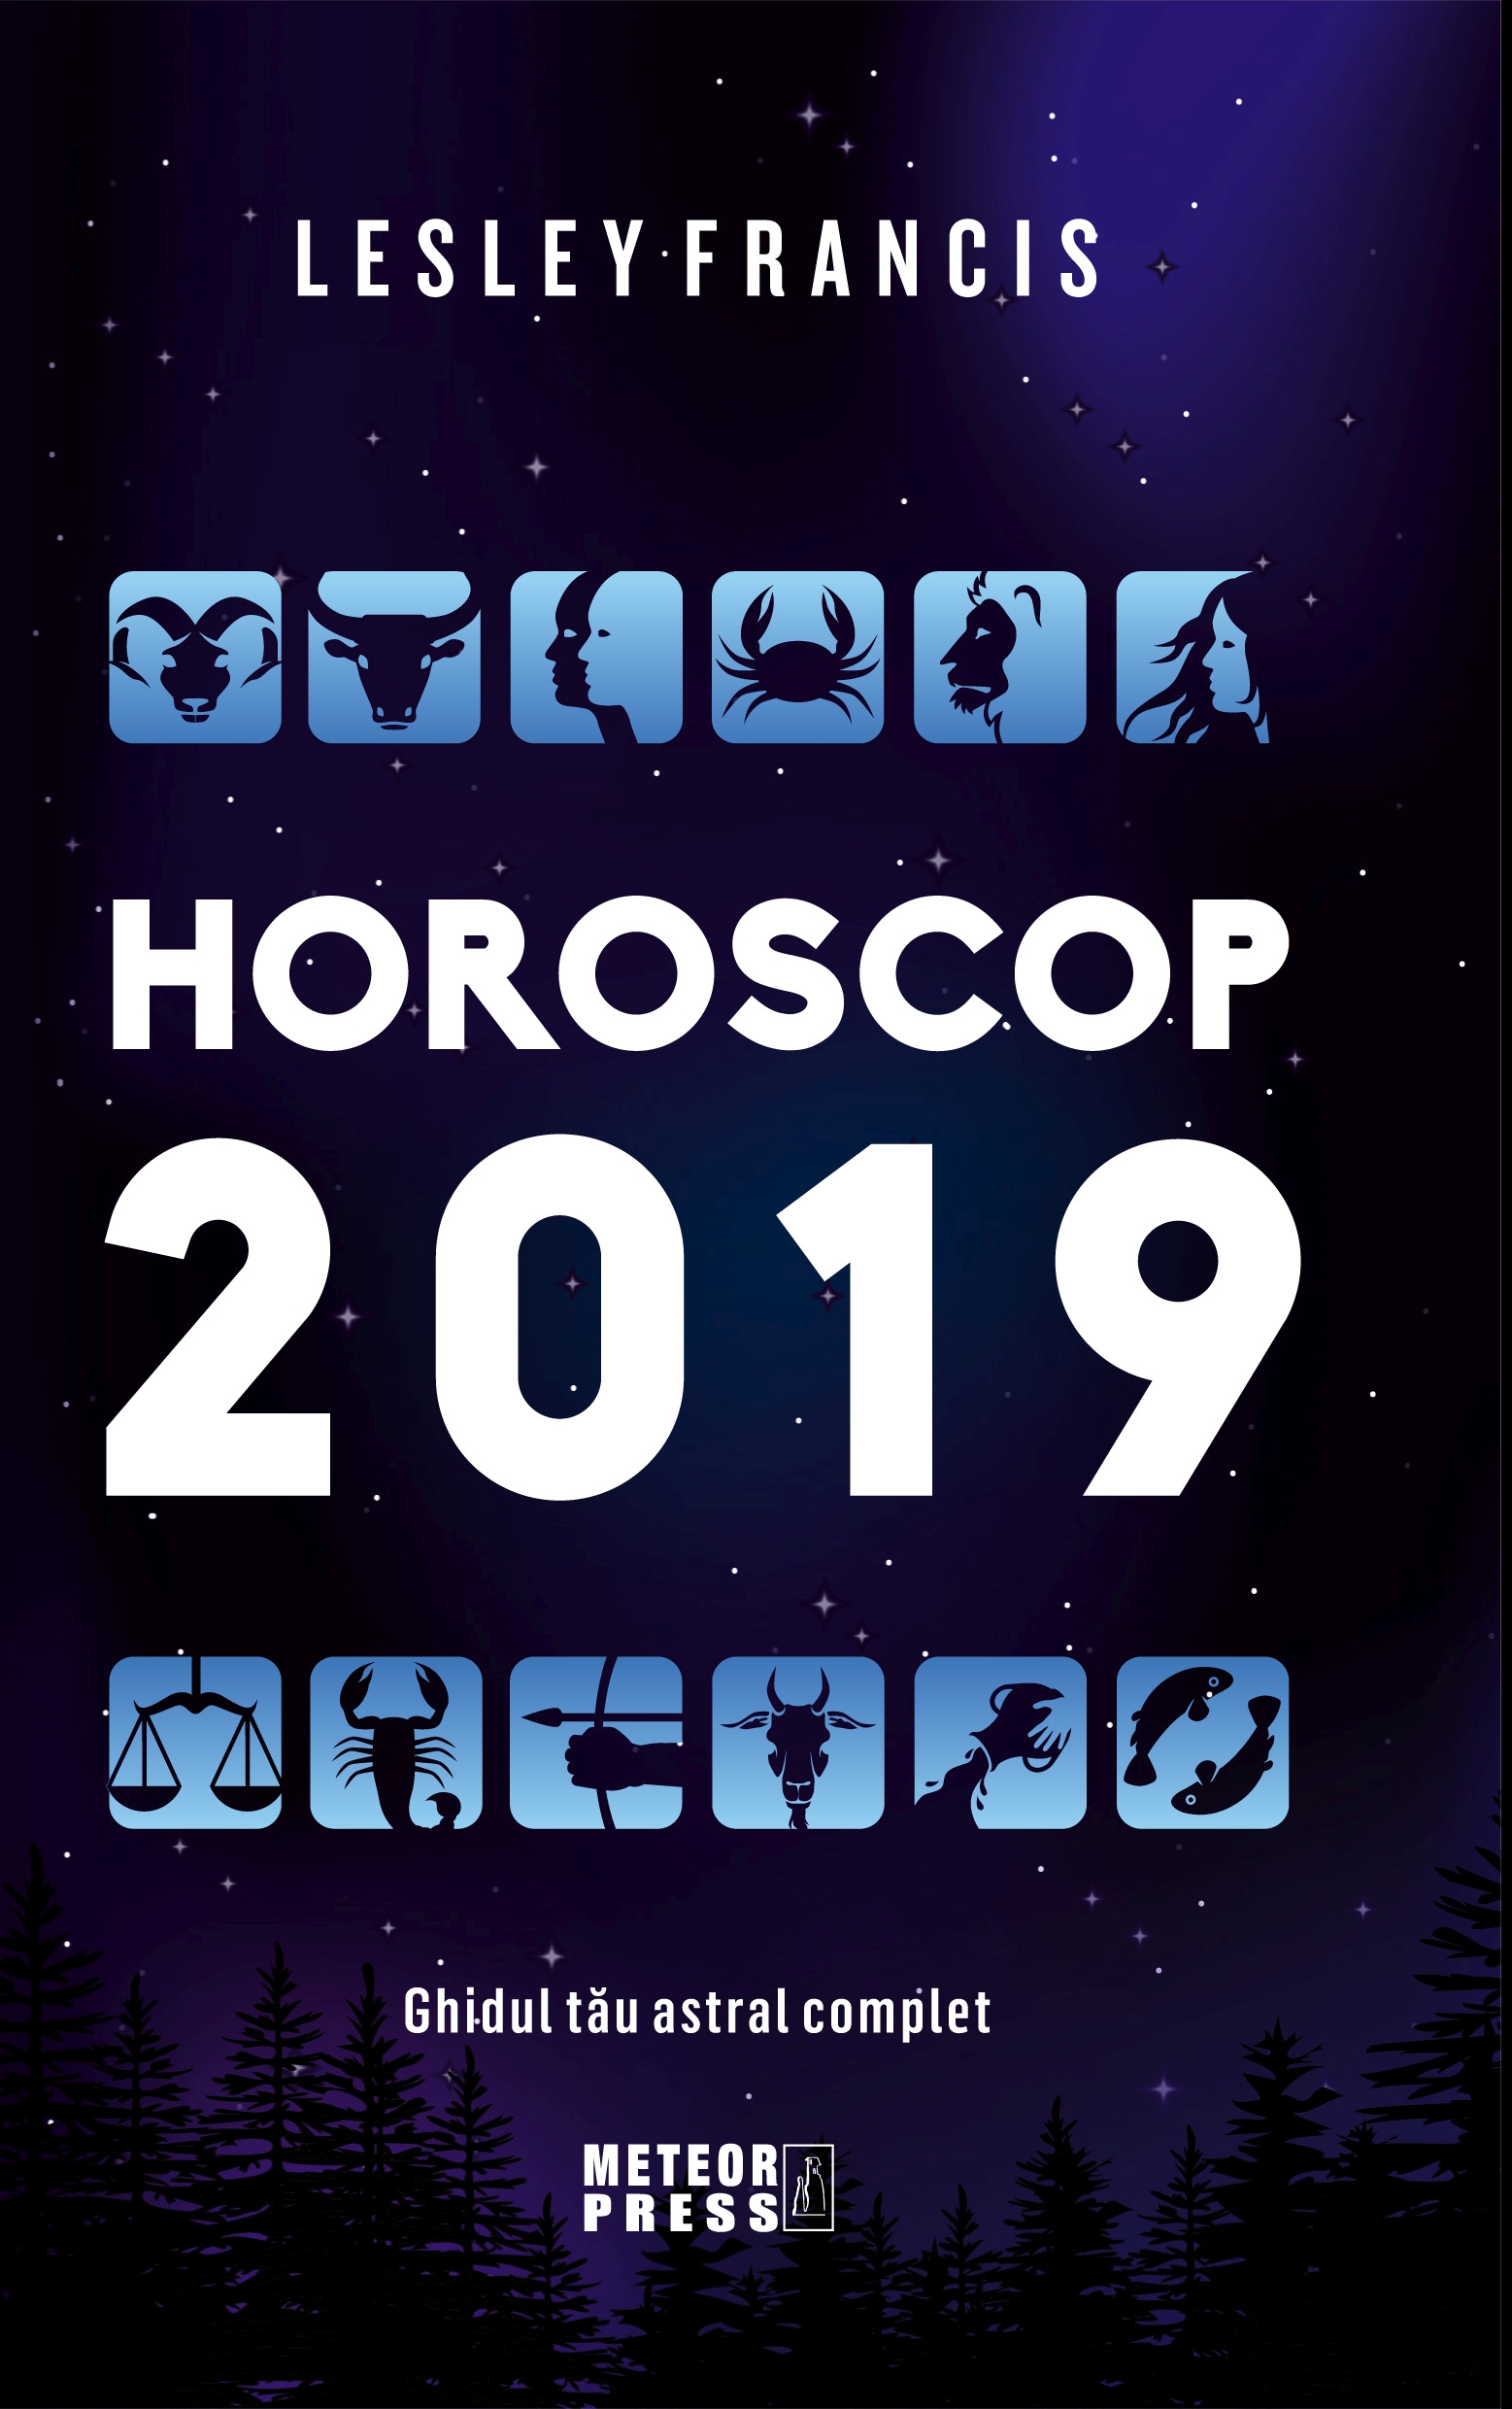 Horoscop 2019 - Lesley Francis